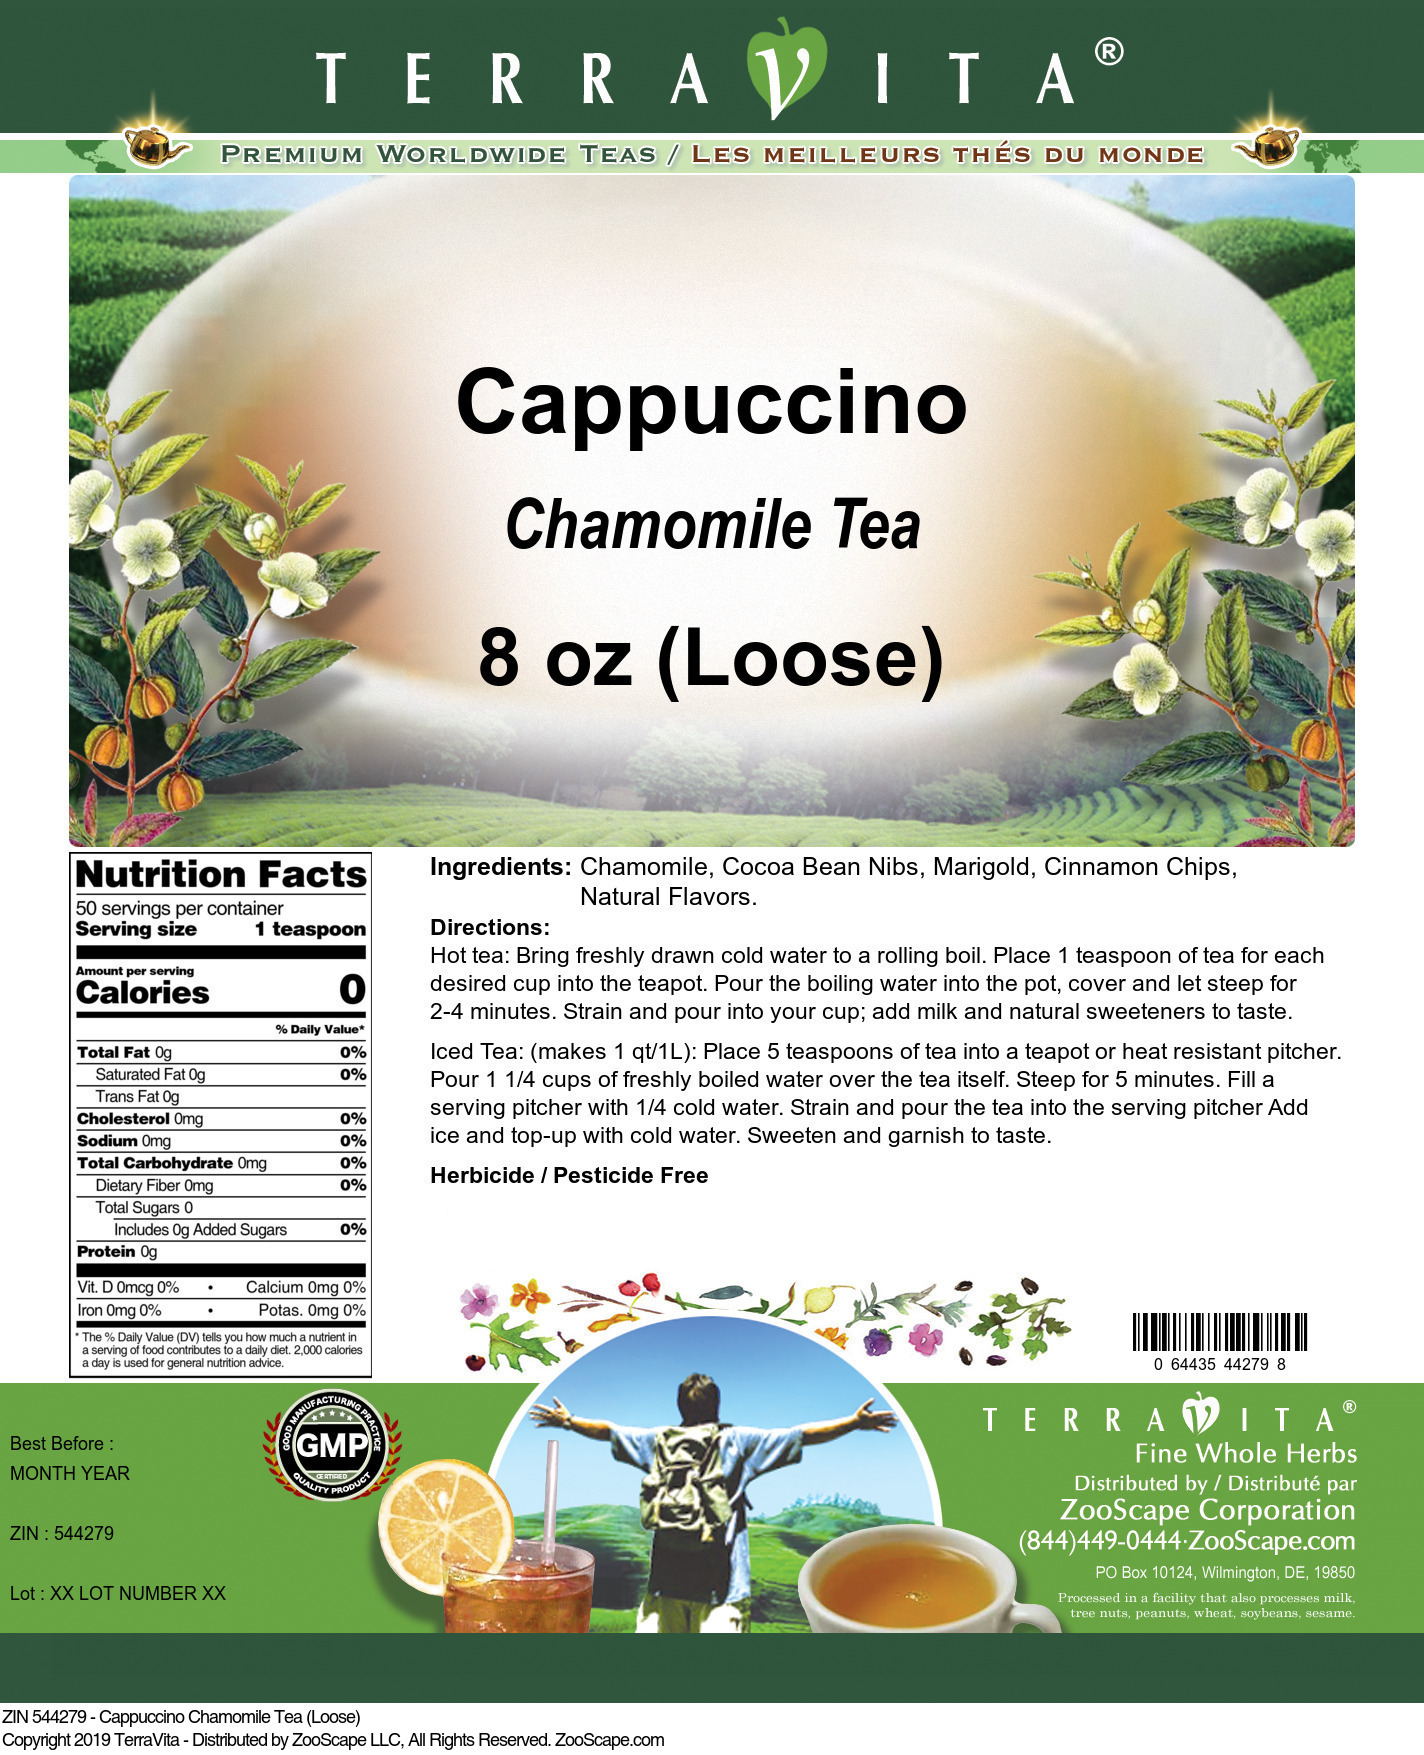 Cappuccino Chamomile Tea (Loose) - Label